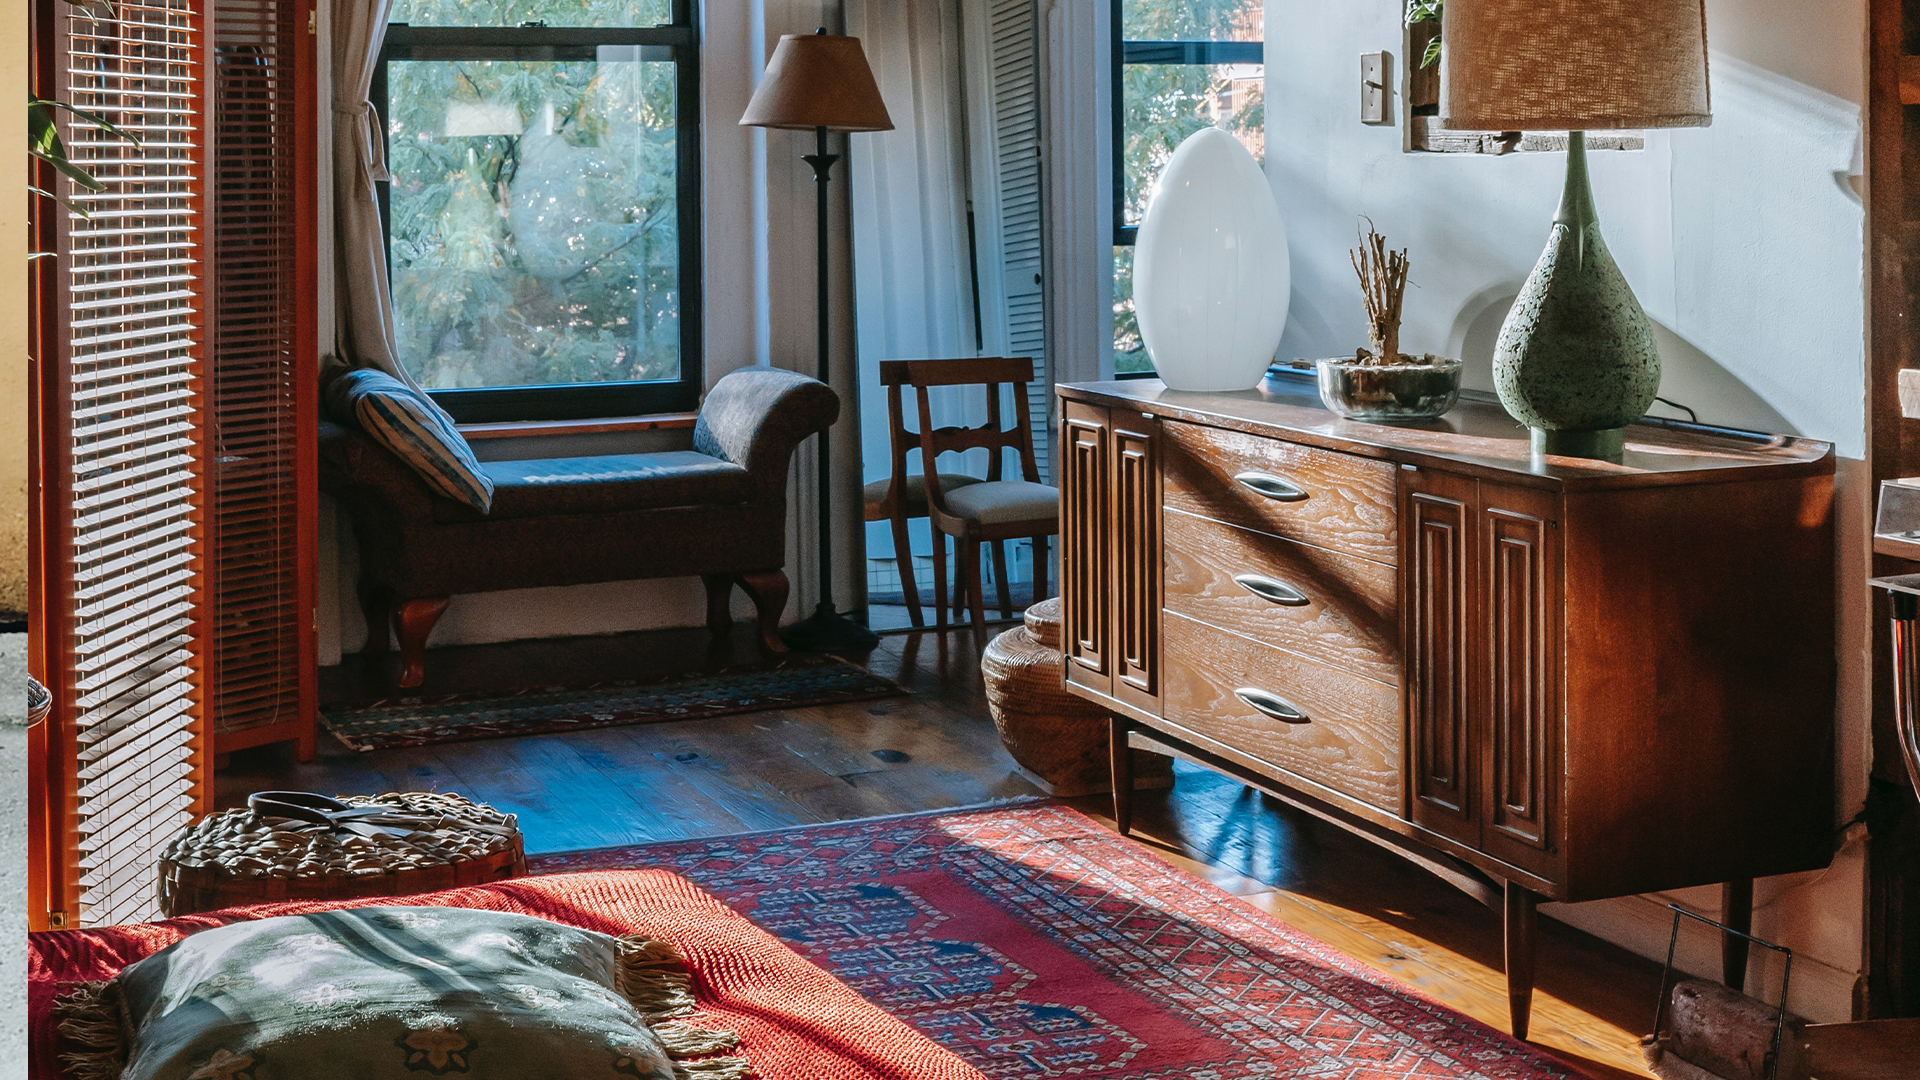 deze inhoudsopgave Negende Vintage meubels zijn de populairste trend op interieurgebied - Vogue NL